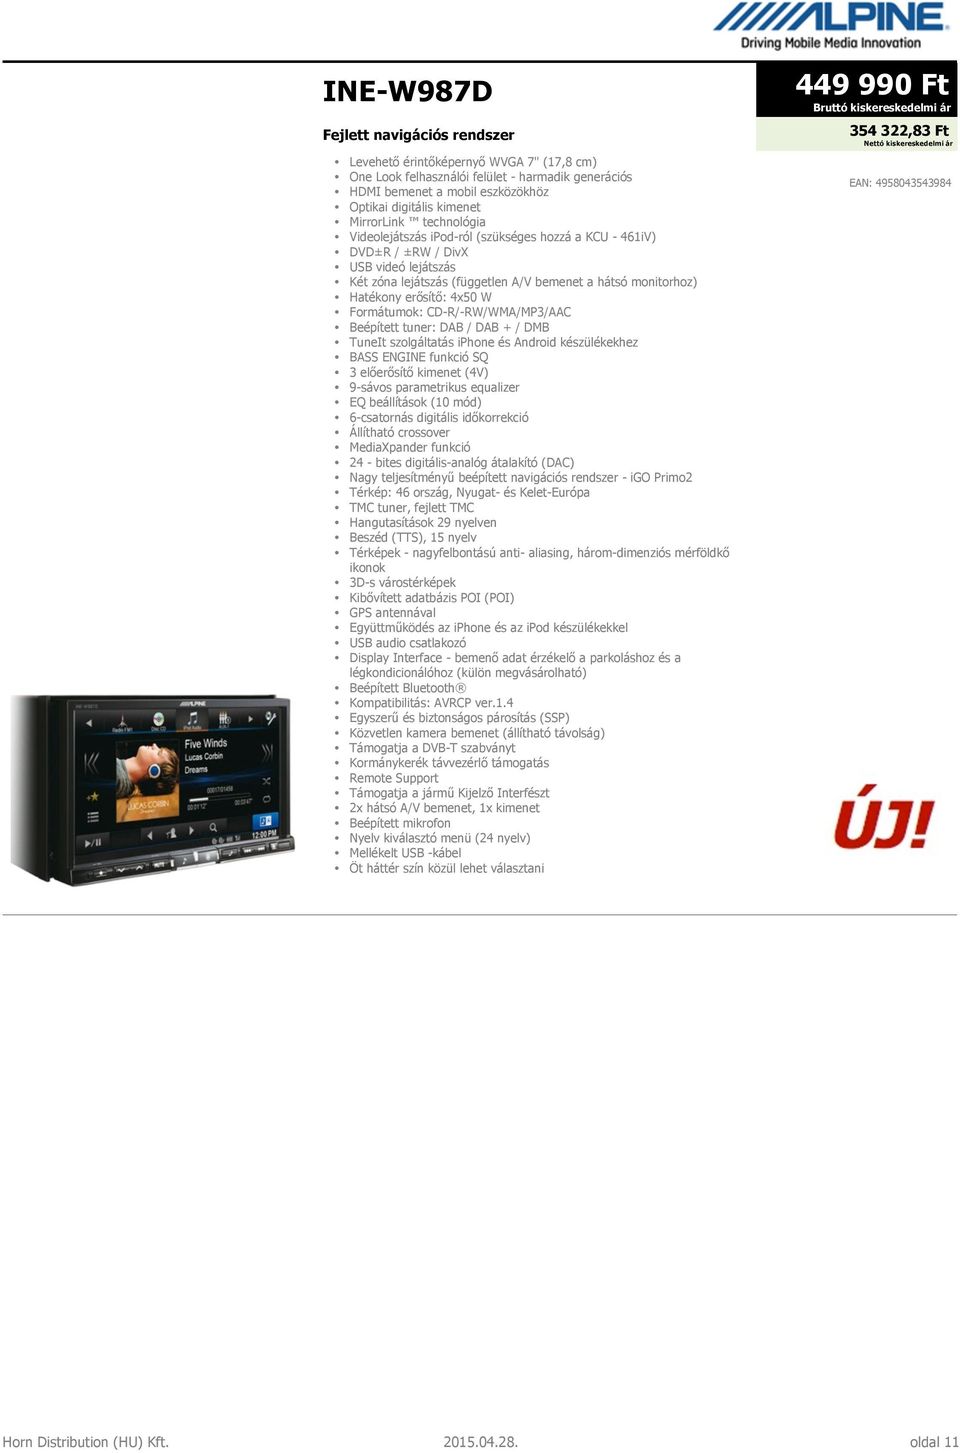 4x50 W Formátumok: CD-R/-RW/WMA/MP3/AAC Beépített tuner: DAB / DAB + / DMB TuneIt szolgáltatás iphone és Android készülékekhez BASS ENGINE funkció SQ 3 előerősítő kimenet (4V) 9-sávos parametrikus